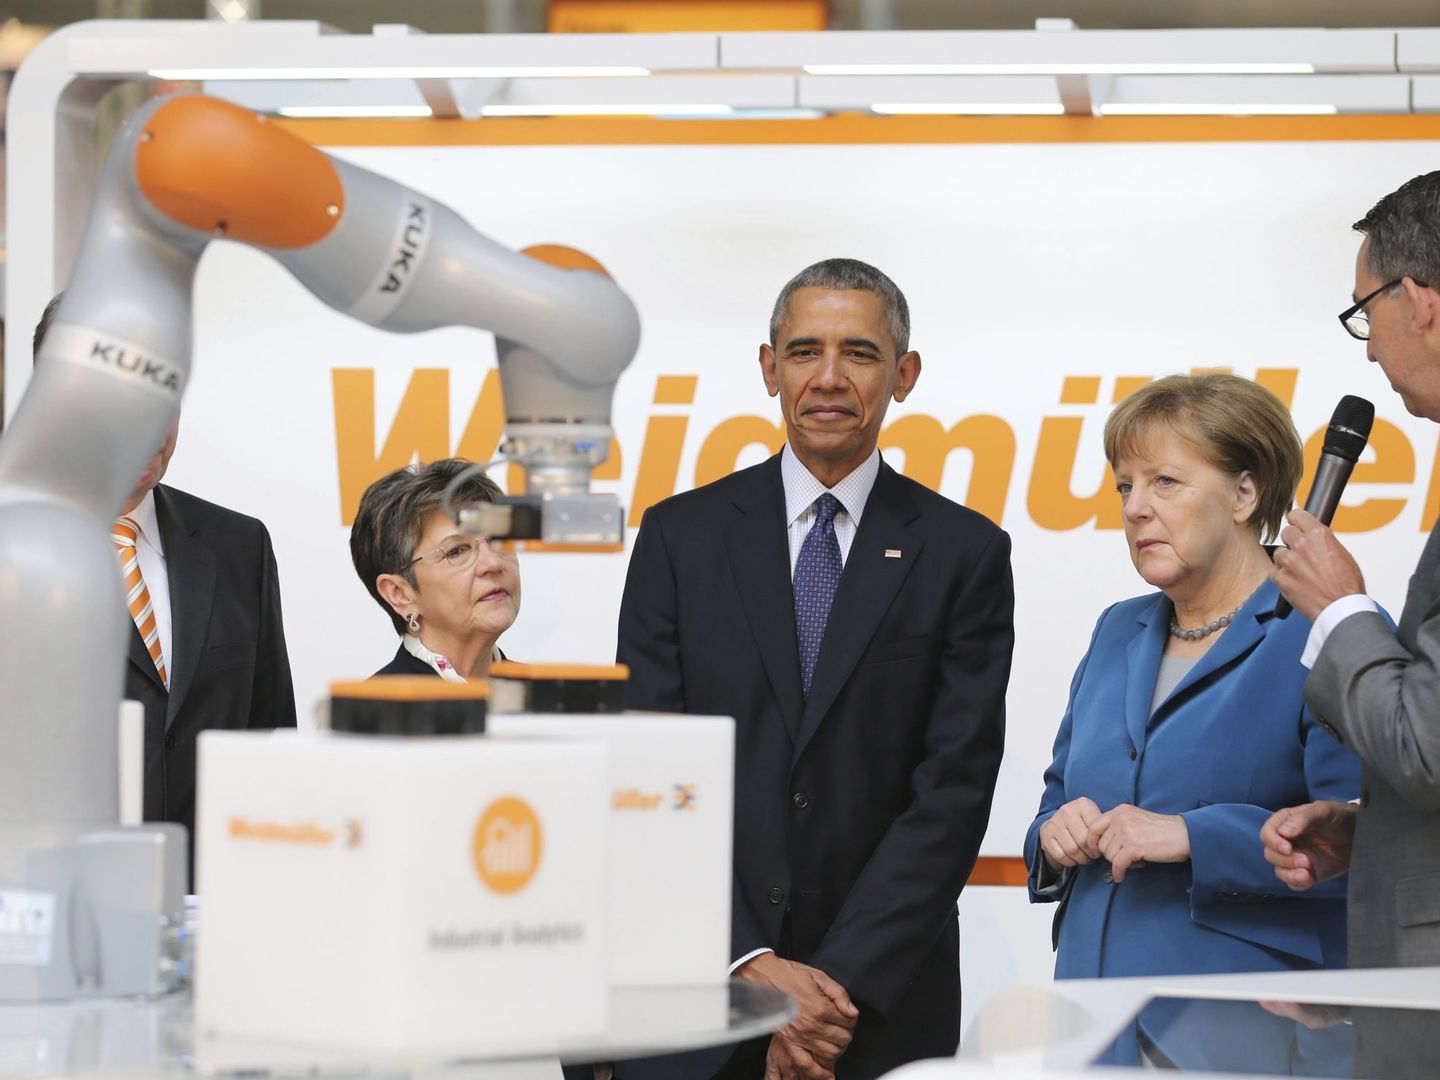 La Canciller Angela Merkel y el Presidente Barack Obama durante la Feria Messe de Hannover, Alemania, el 25 de abril de 2016 (EFE)